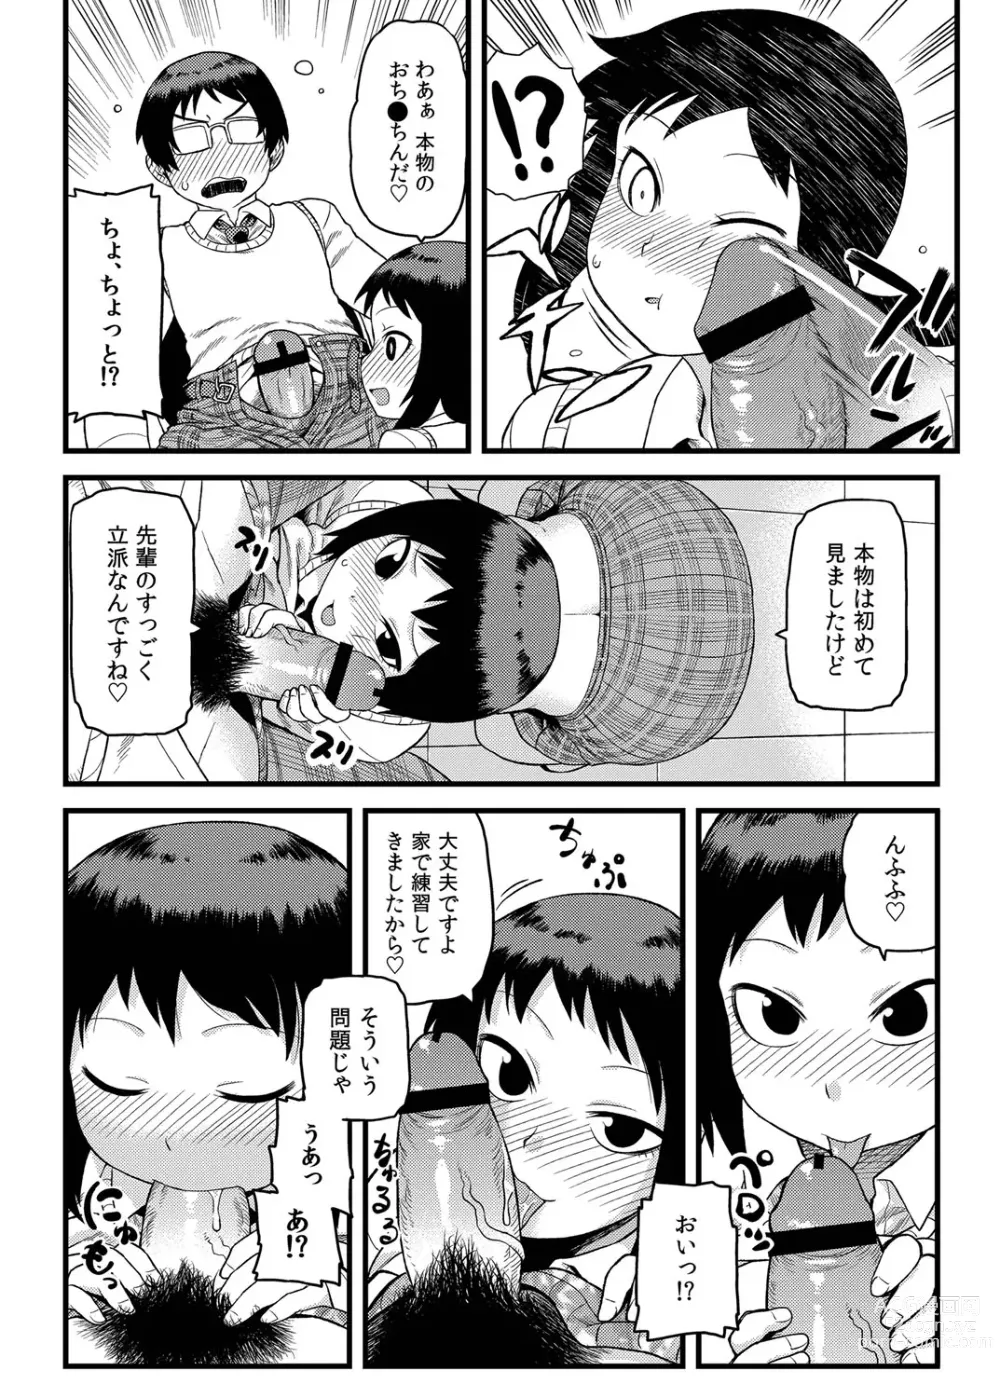 Page 7 of manga Toshoshitsu no Senpai to.